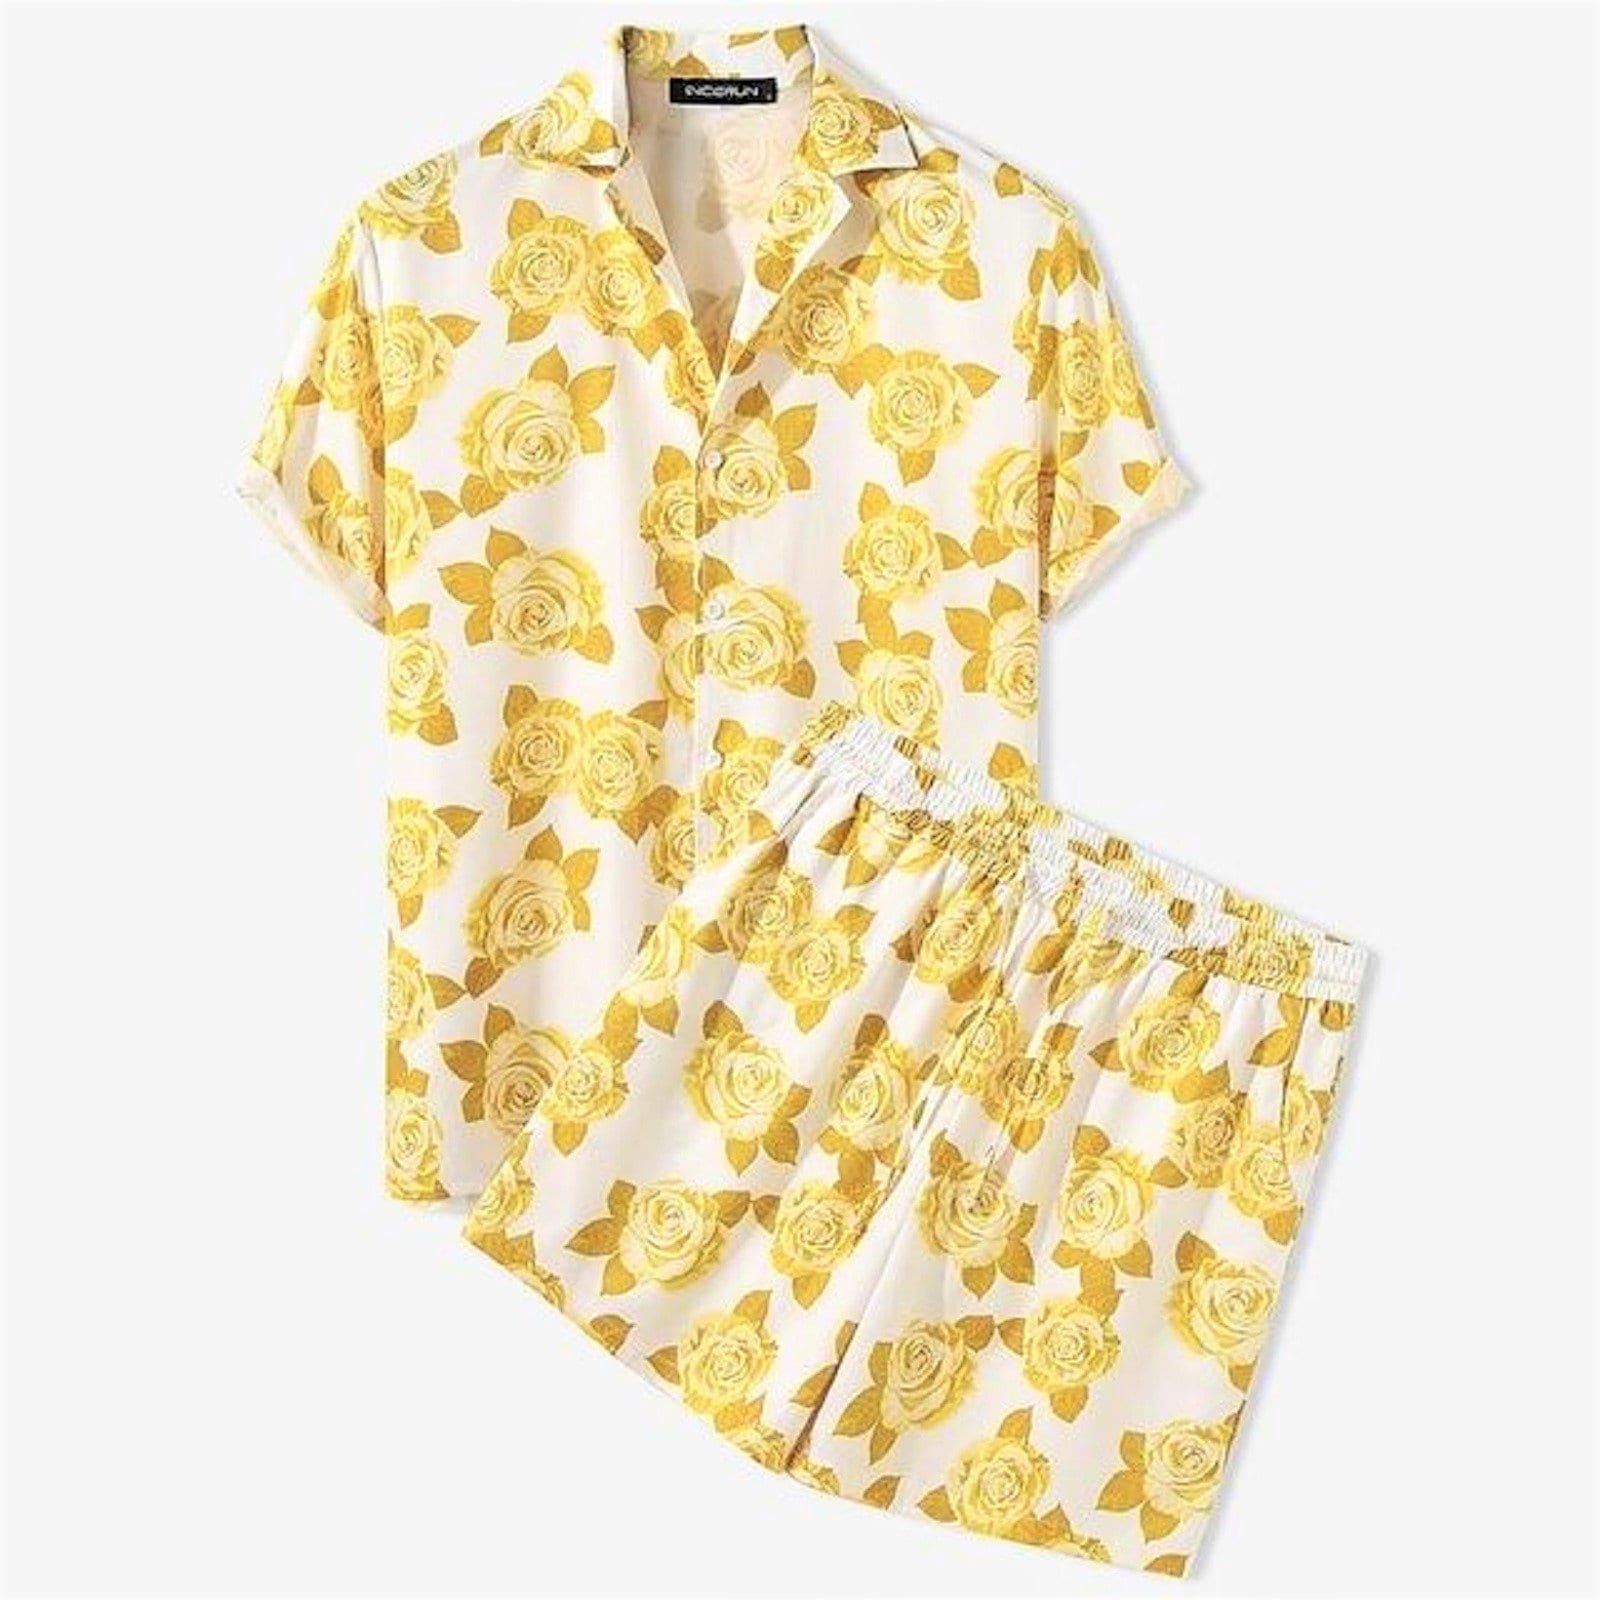 Mens Hawaiian Shirt and Shorts Set 3 Tropical Styles Great | Etsy